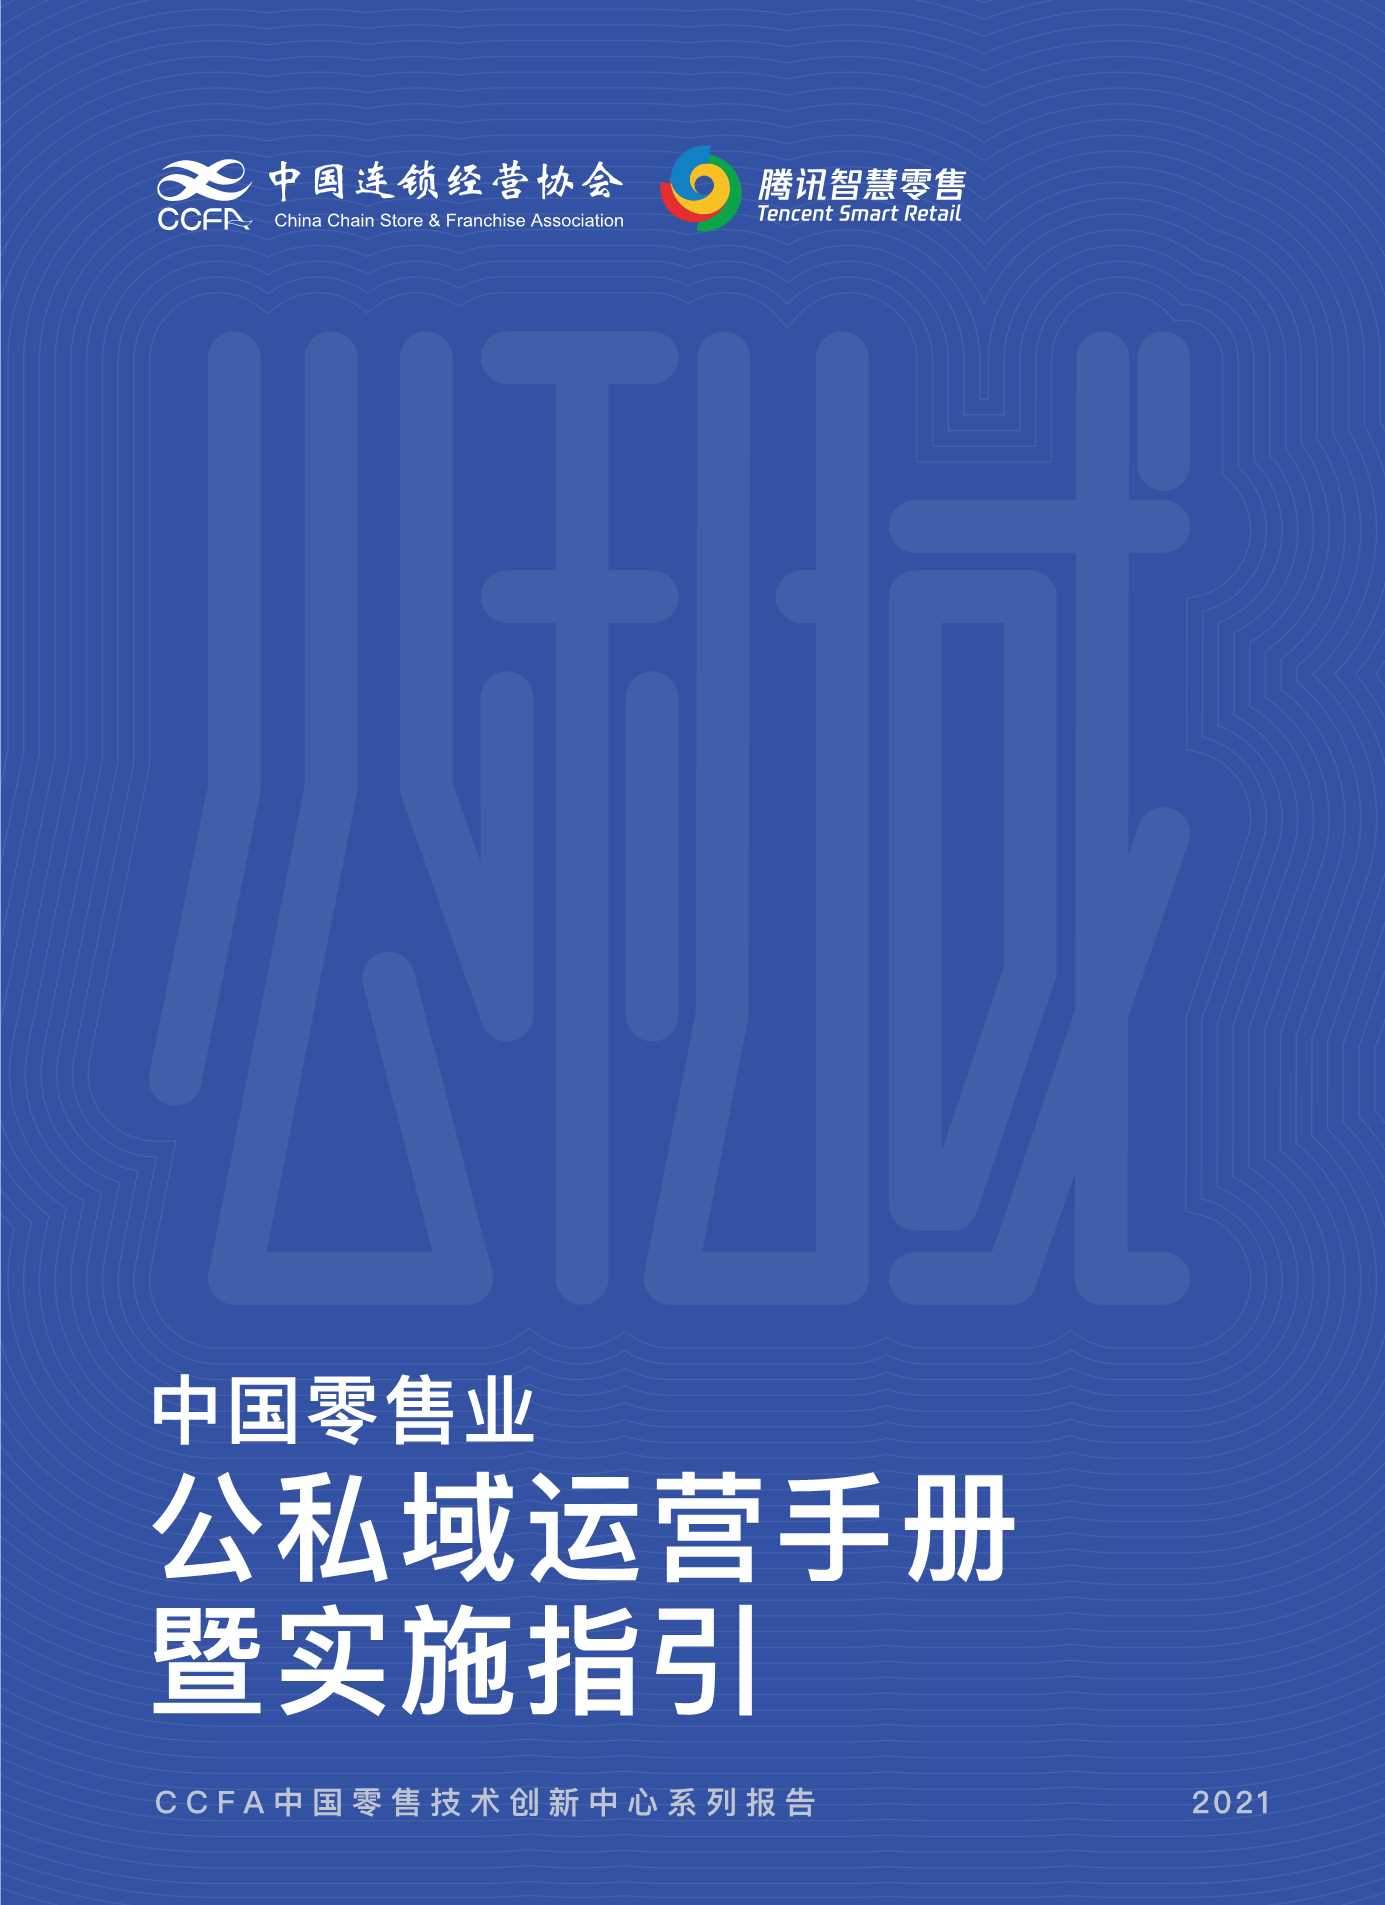 中国零售业公私域运营手册暨实施指引-2021.12-115页